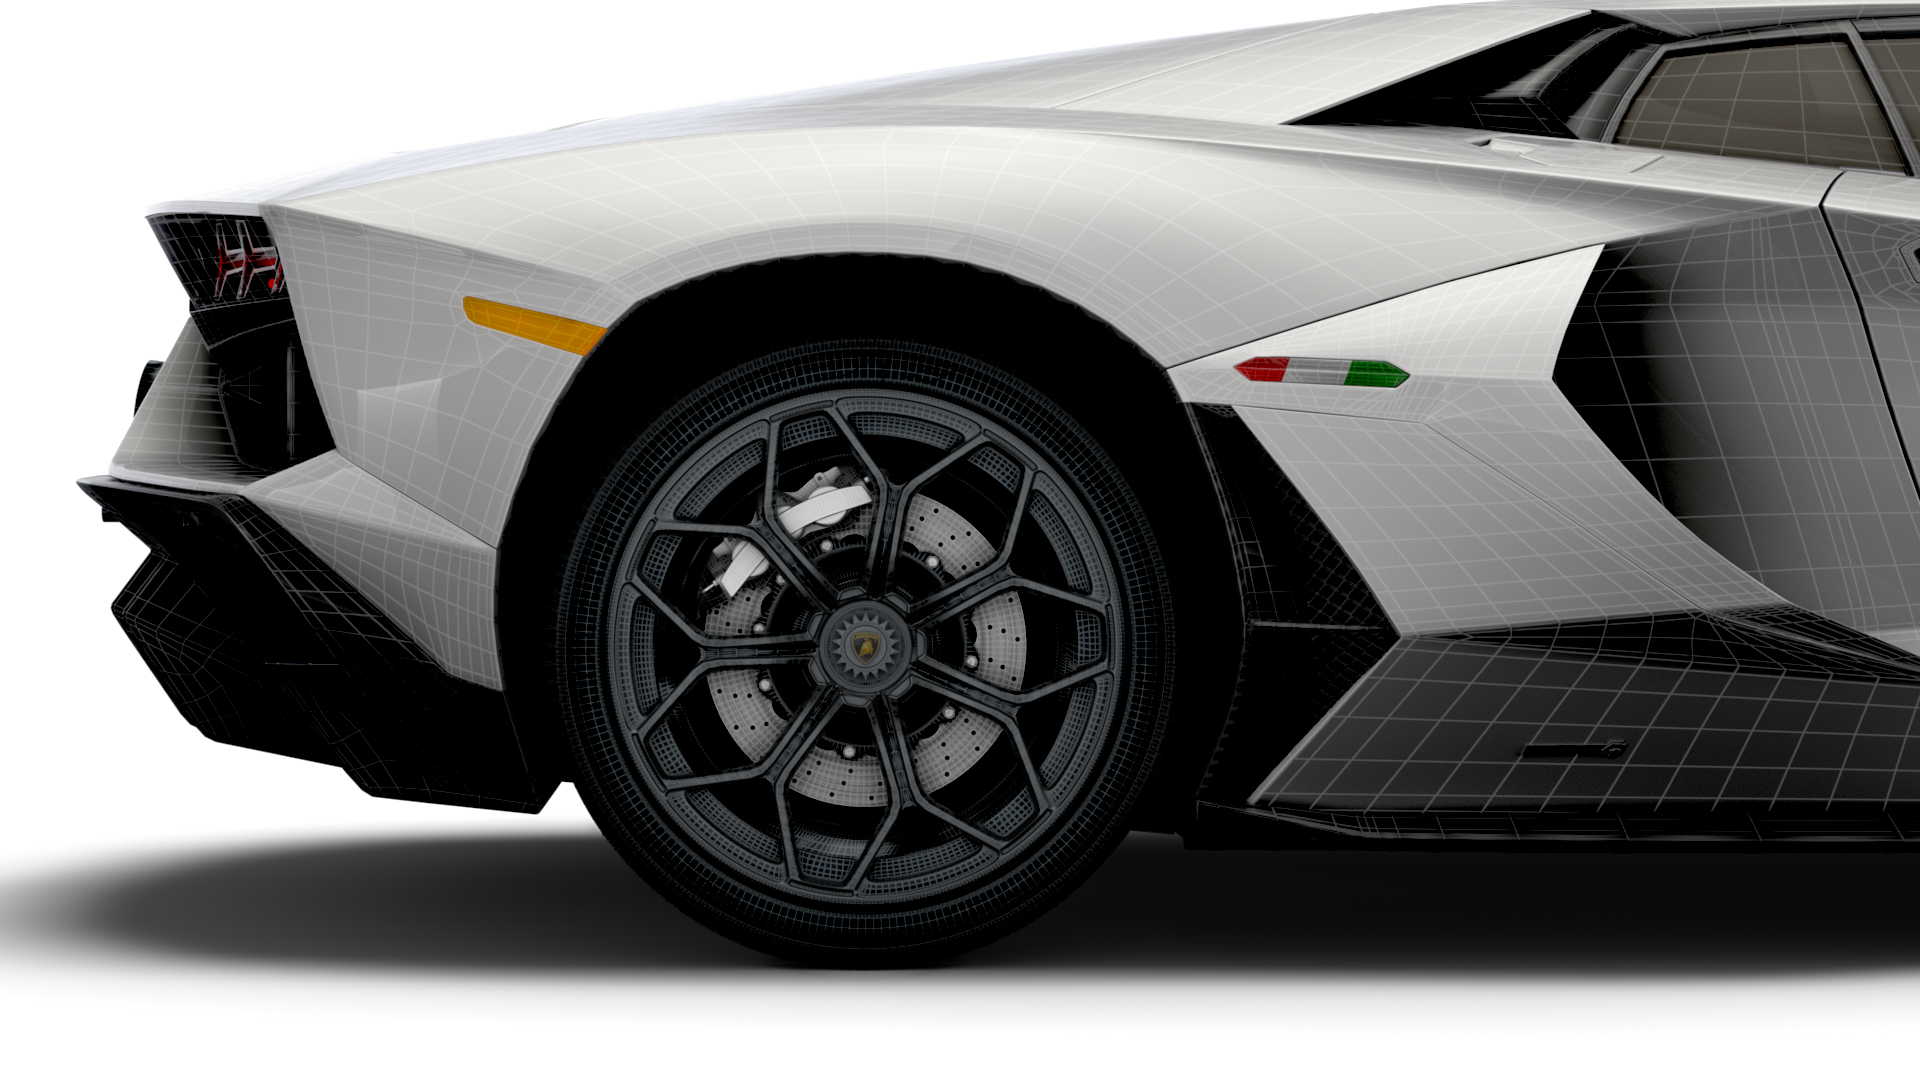 Lamborghini Aventador Lp 780-4 Ultimae Wallpapers